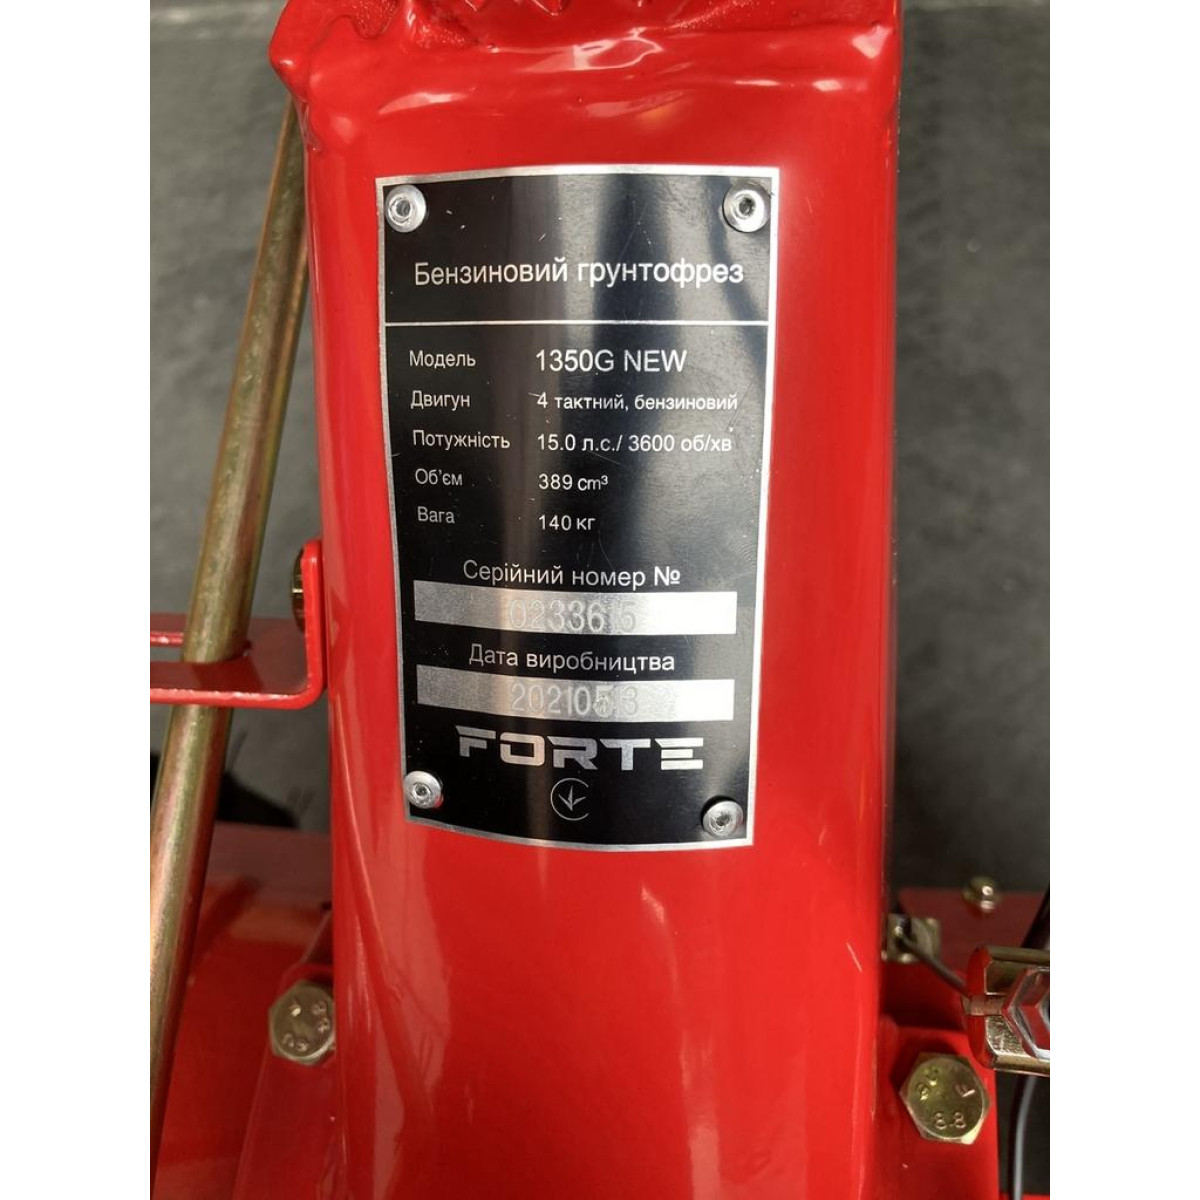 Культиватор бензиновий Forte 1350G 15HP NEW колесо 12"